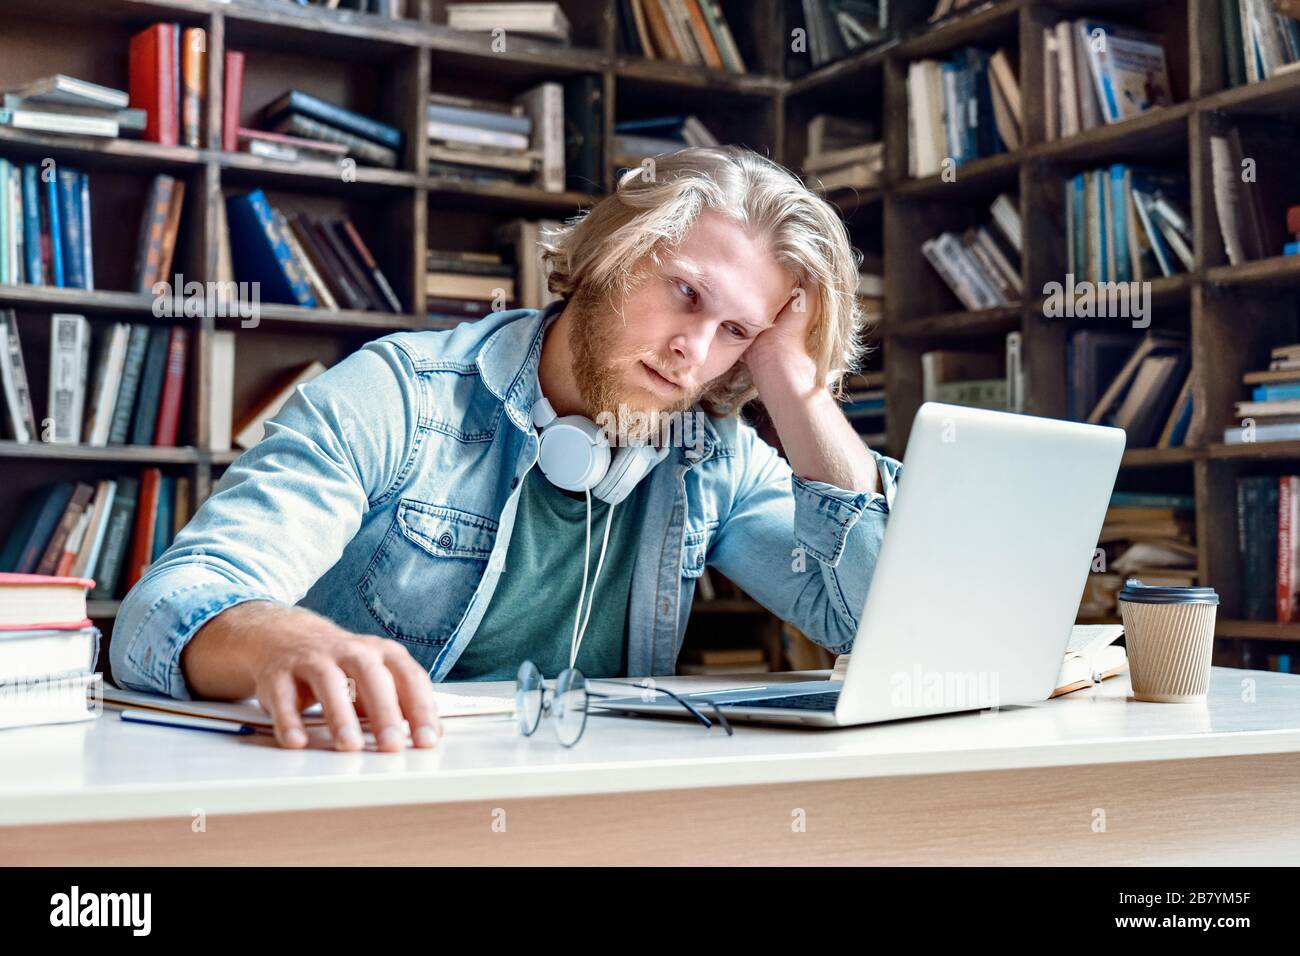 Un homme malcontent qui s'ennuie étudiant en regardant un ordinateur portable. Banque D'Images